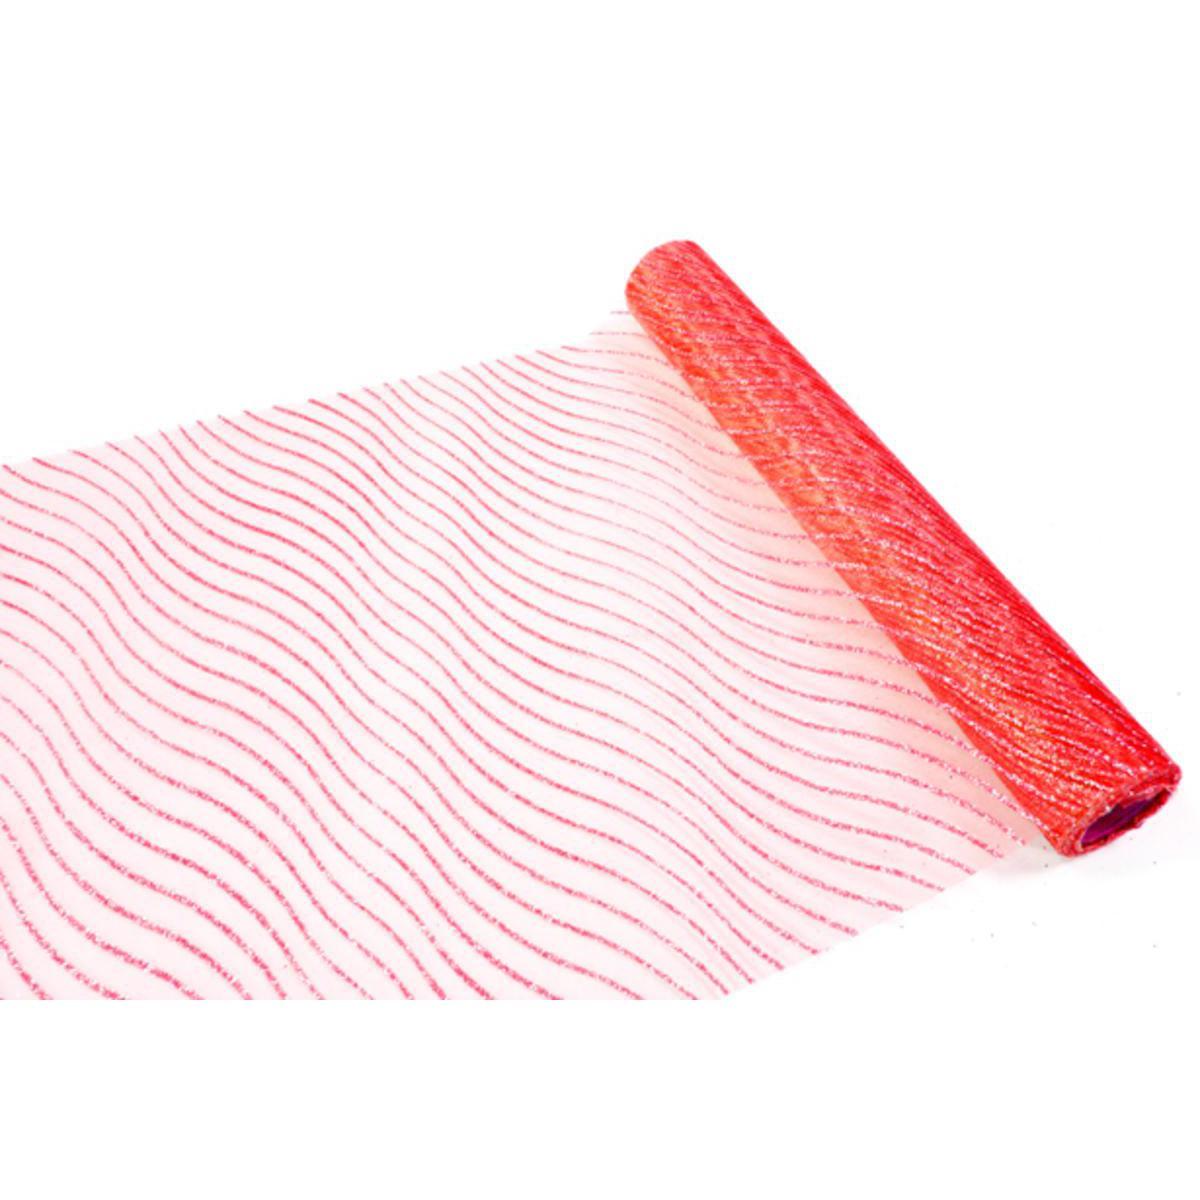 Chemin de table sable - Organza - 28 cm x 5 m - Rouge